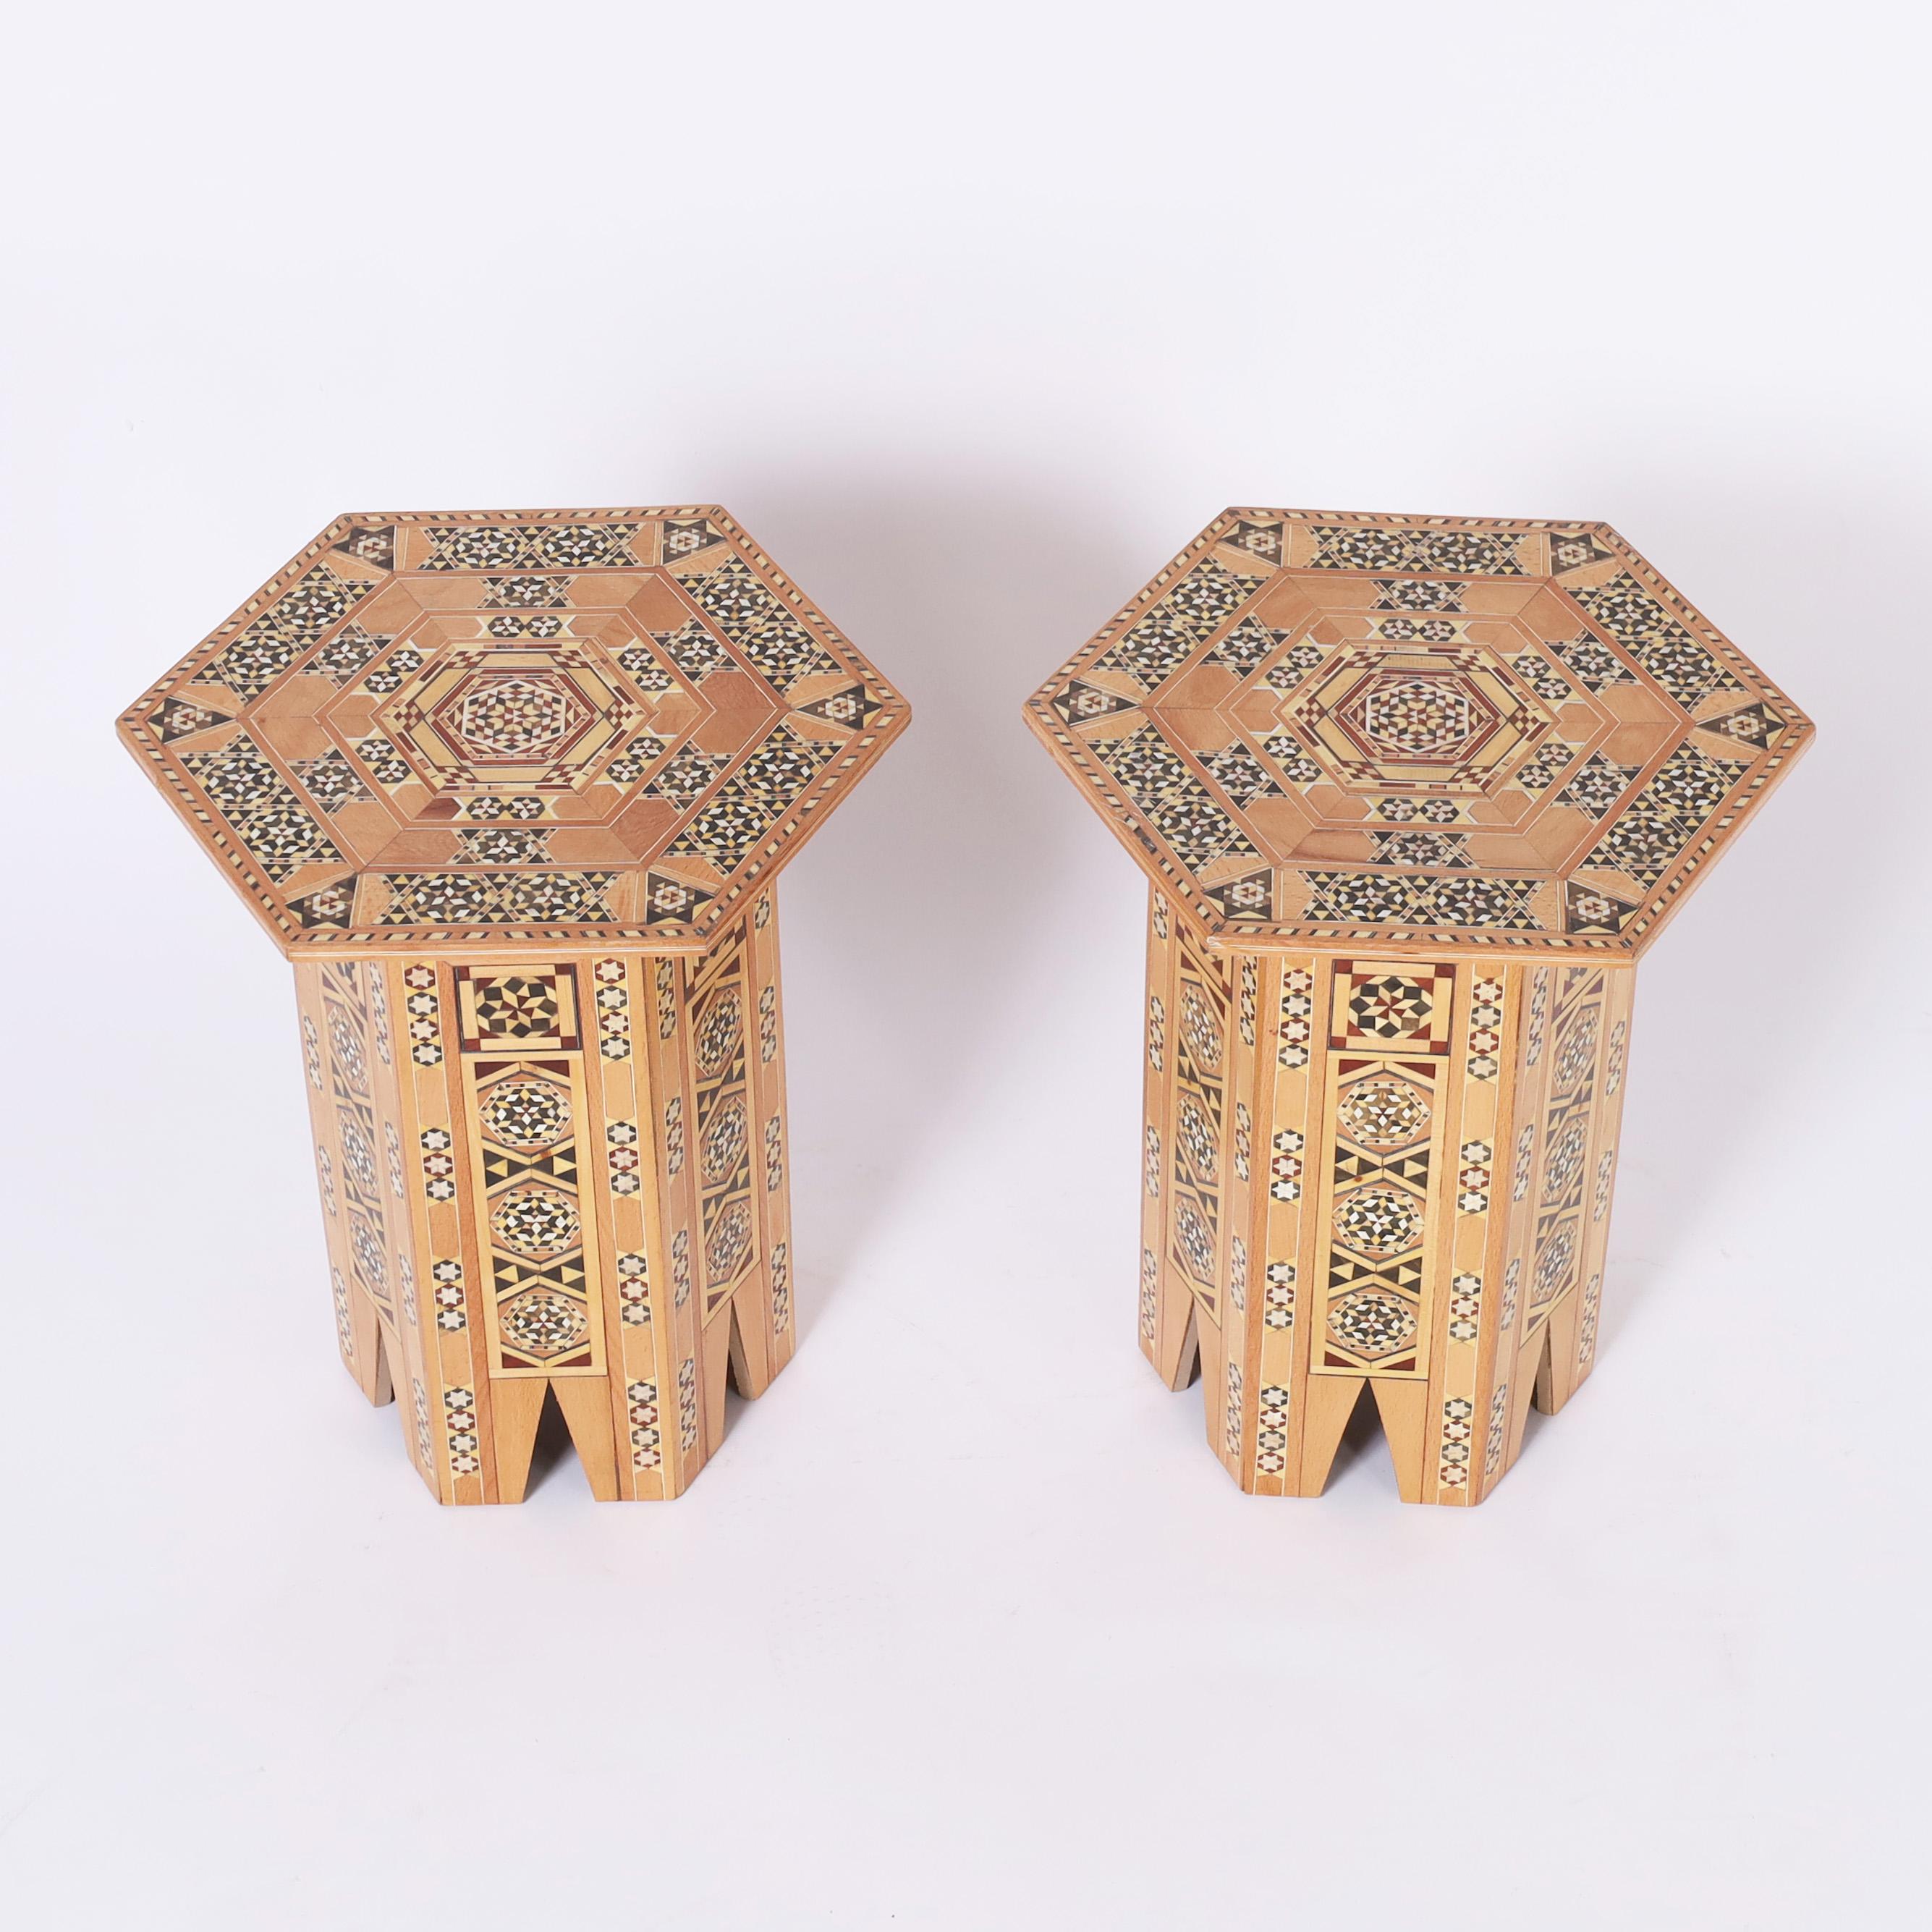 Impressionnante paire de stands marocains avec une marqueterie géométrique élaborée composée de bois exotiques tels que l'acajou, l'ébène, le noyer, le bois blanc et le peuplier jaune sur une forme hexagonale avec des arcs stylisés. 